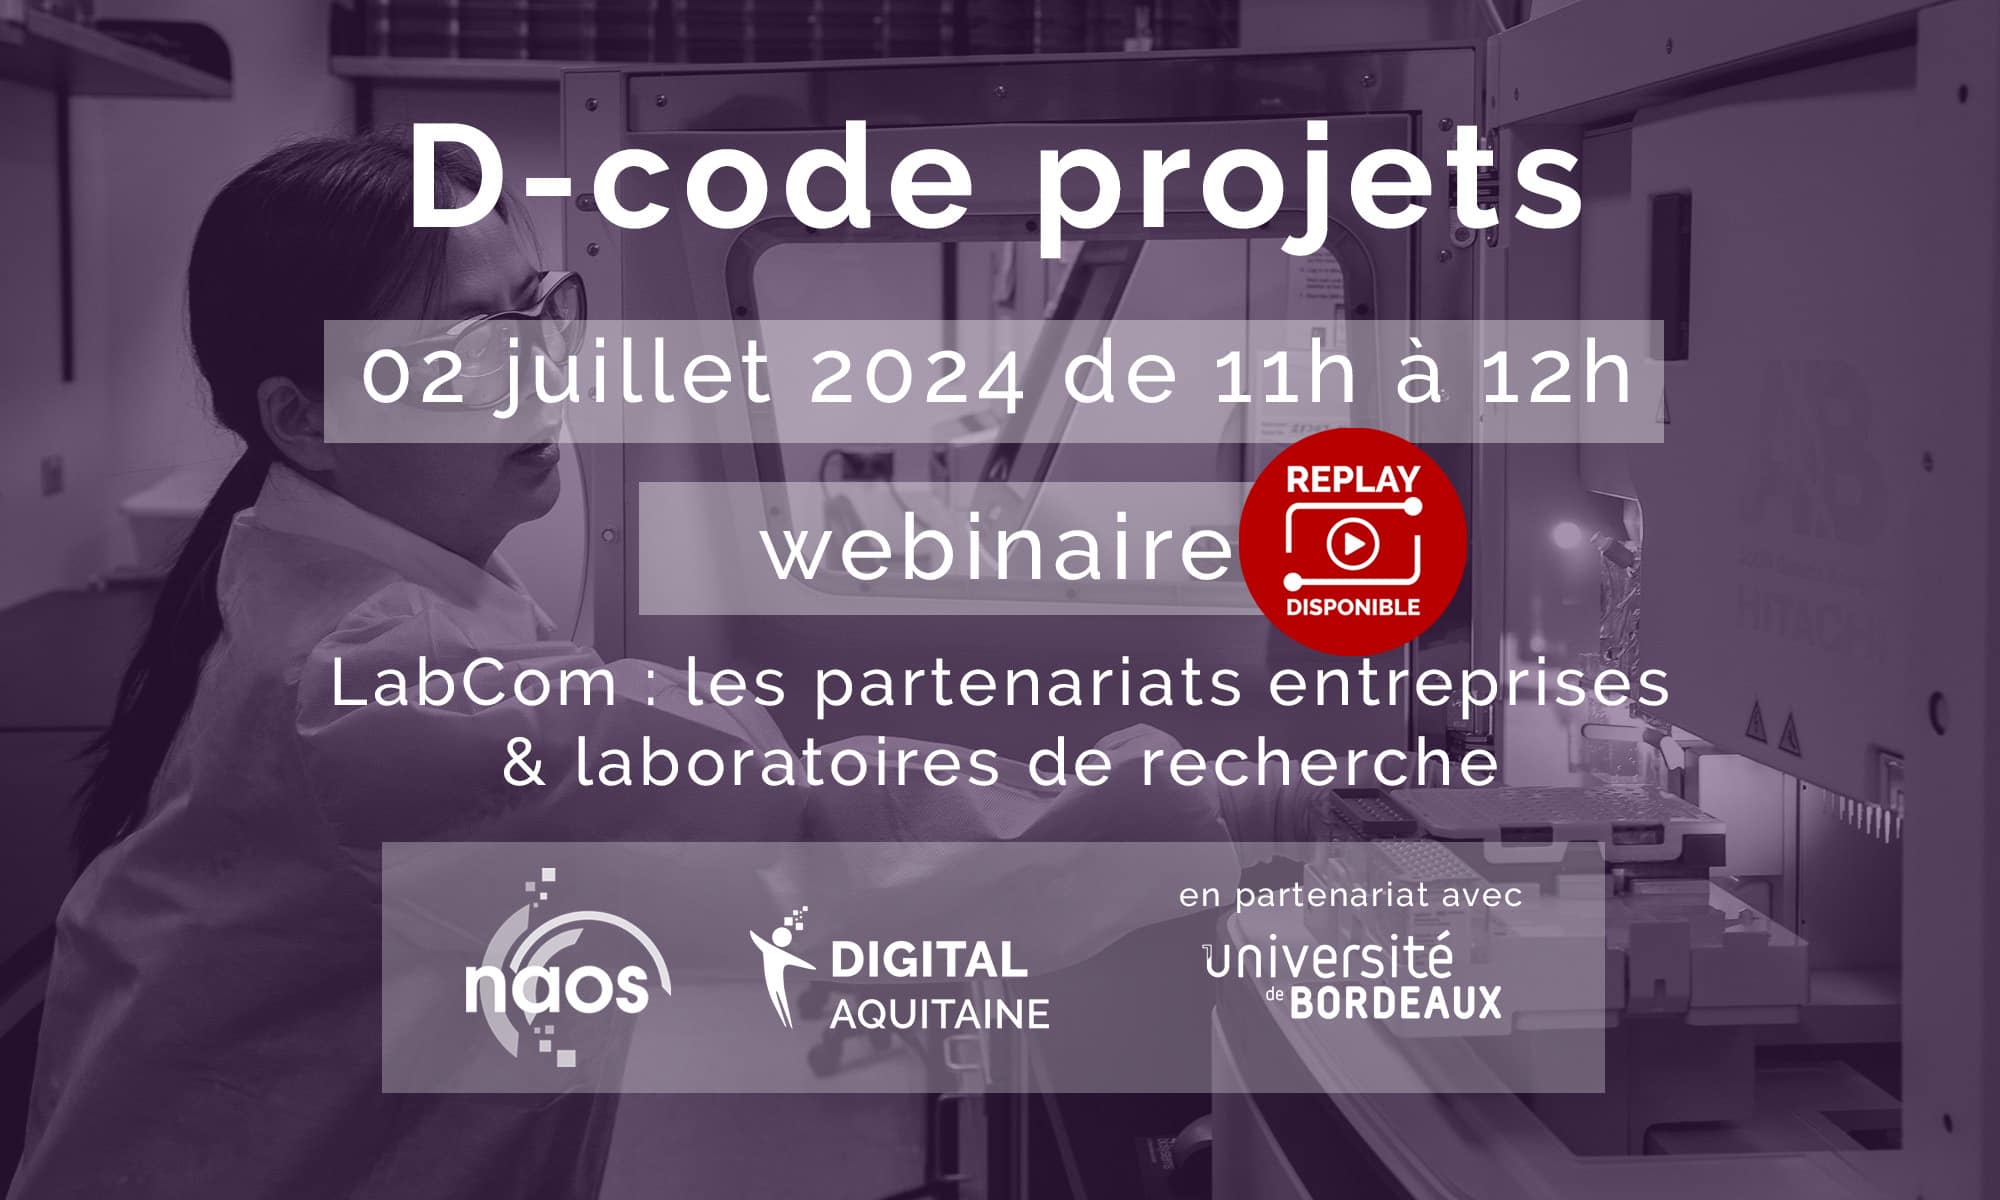 Webinaire D-code projets #2 : LabCom, les partenariats entreprises et laboratoires de recherche